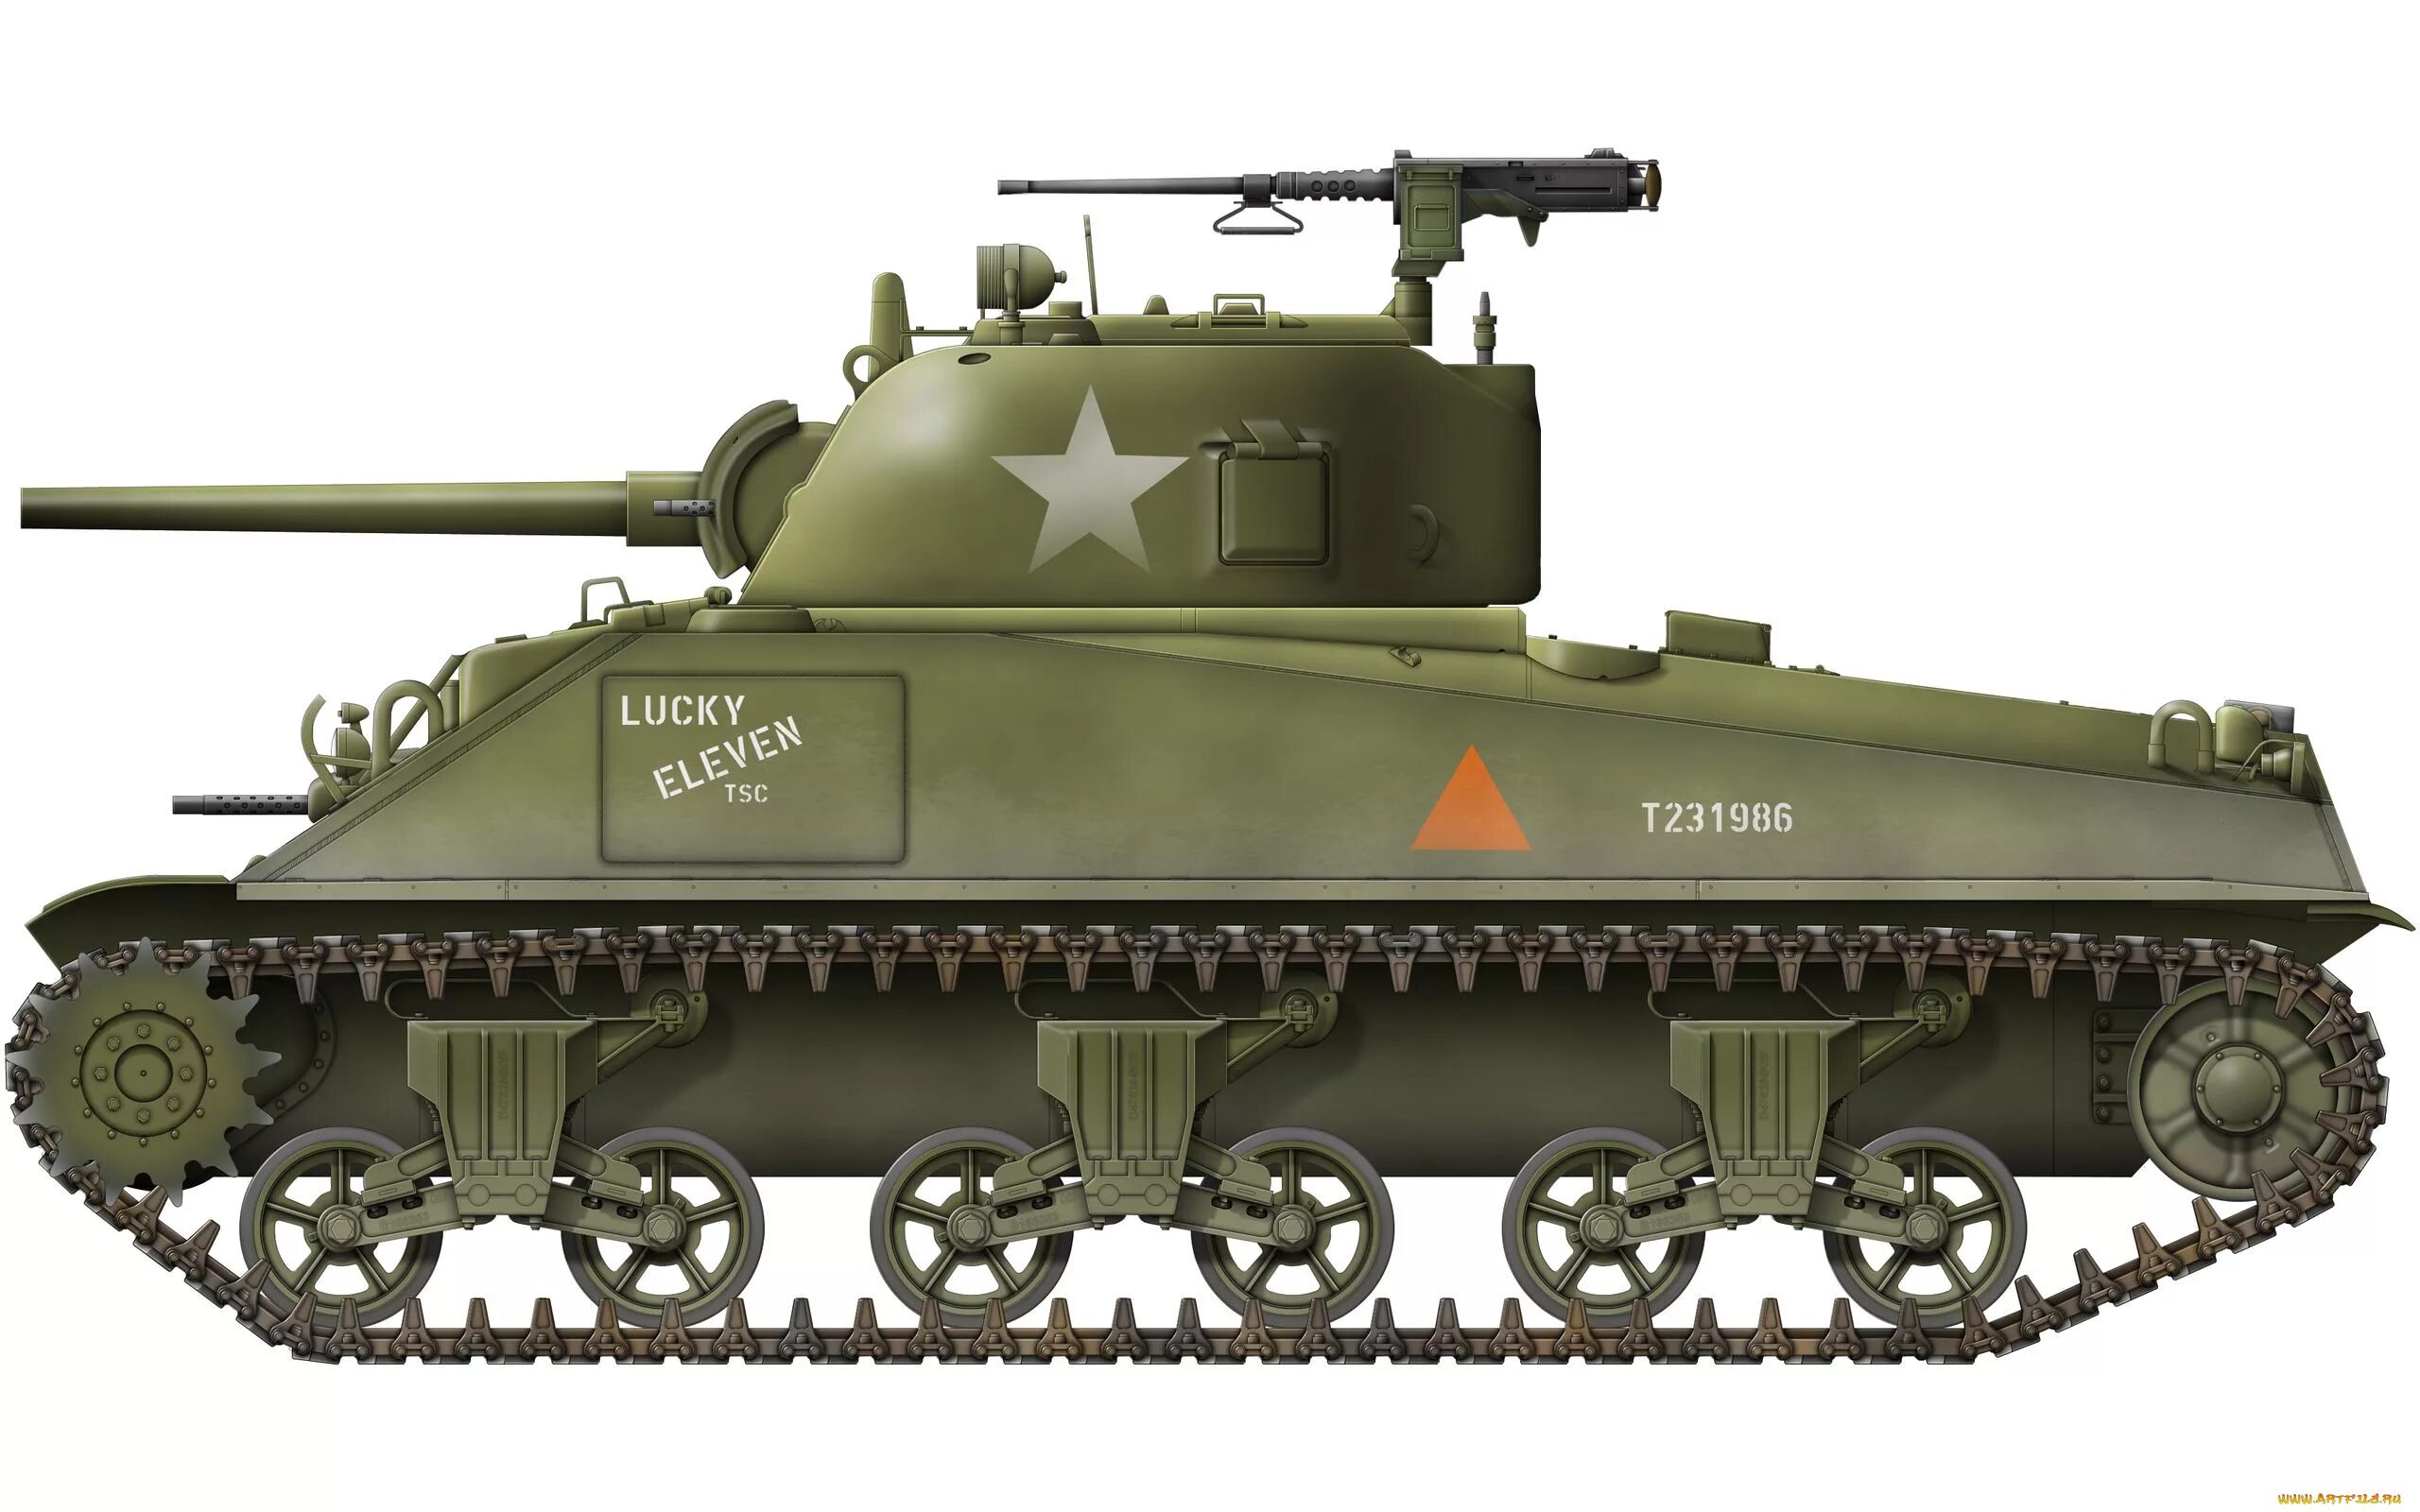 Танк Шерман сбоку. М4 Шерман танк сбоку. Танк Шерман вид сбоку. Танк m4 Sherman с боку.